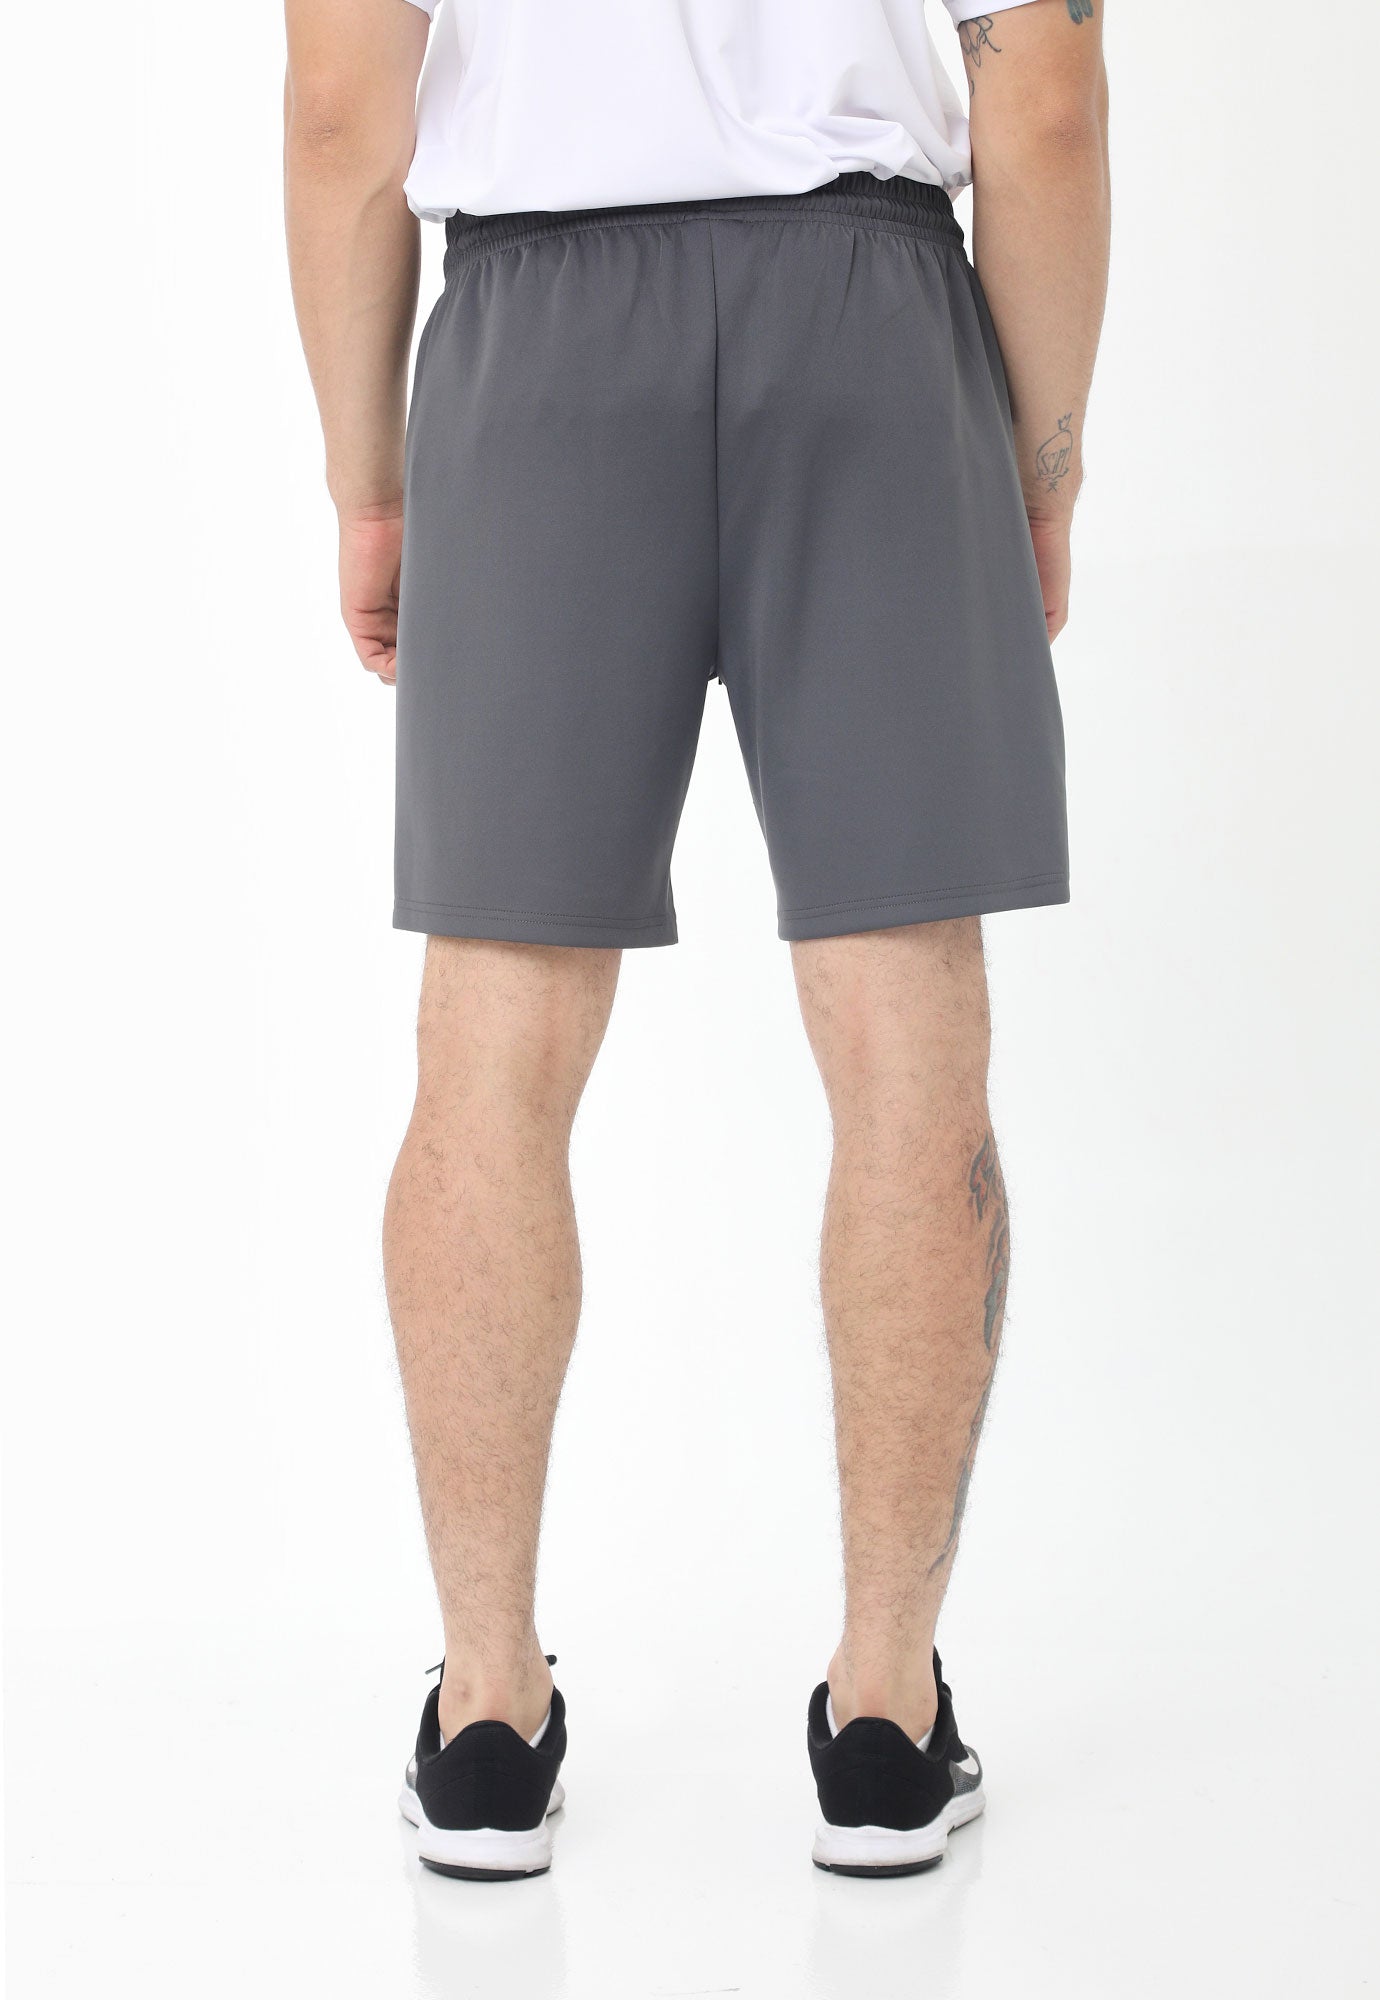 Pantaloneta deportiva gris detalle reflectivo, cintura con elástico y cordón ajustable para hombre